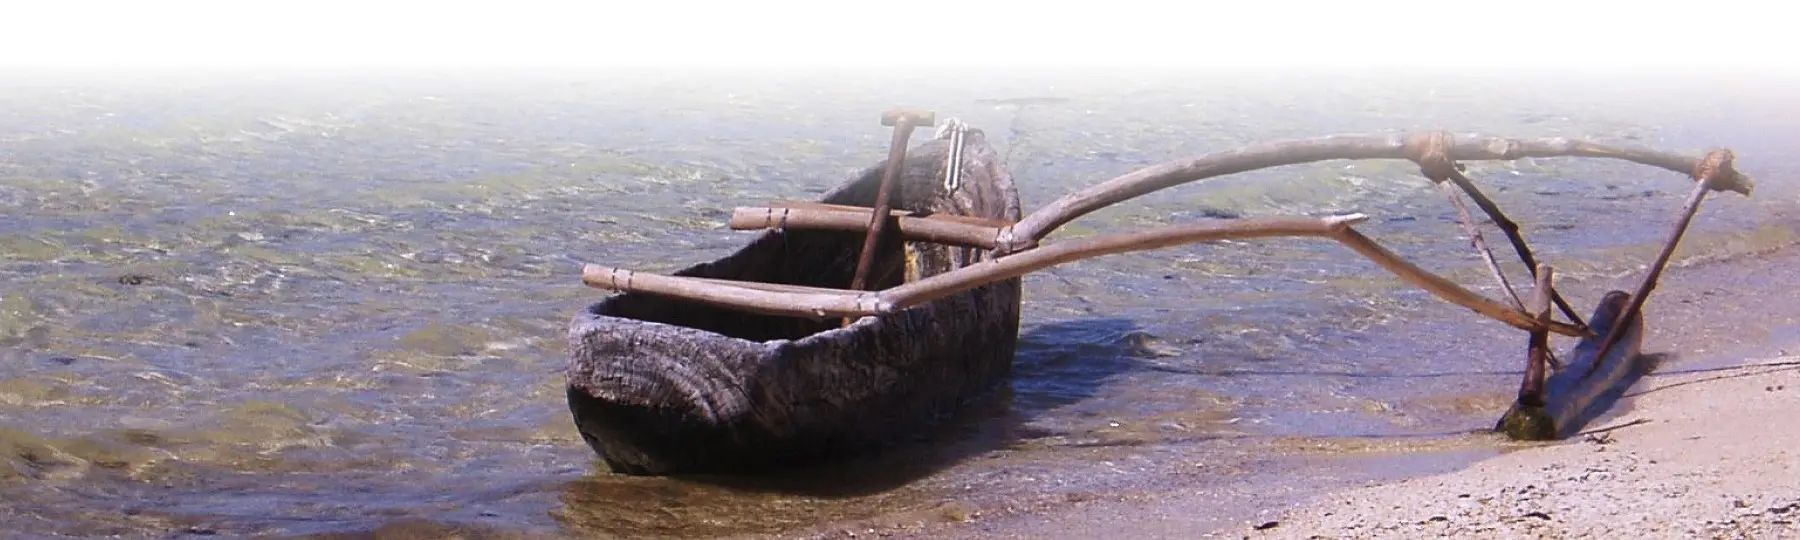 Canoe in Fiji